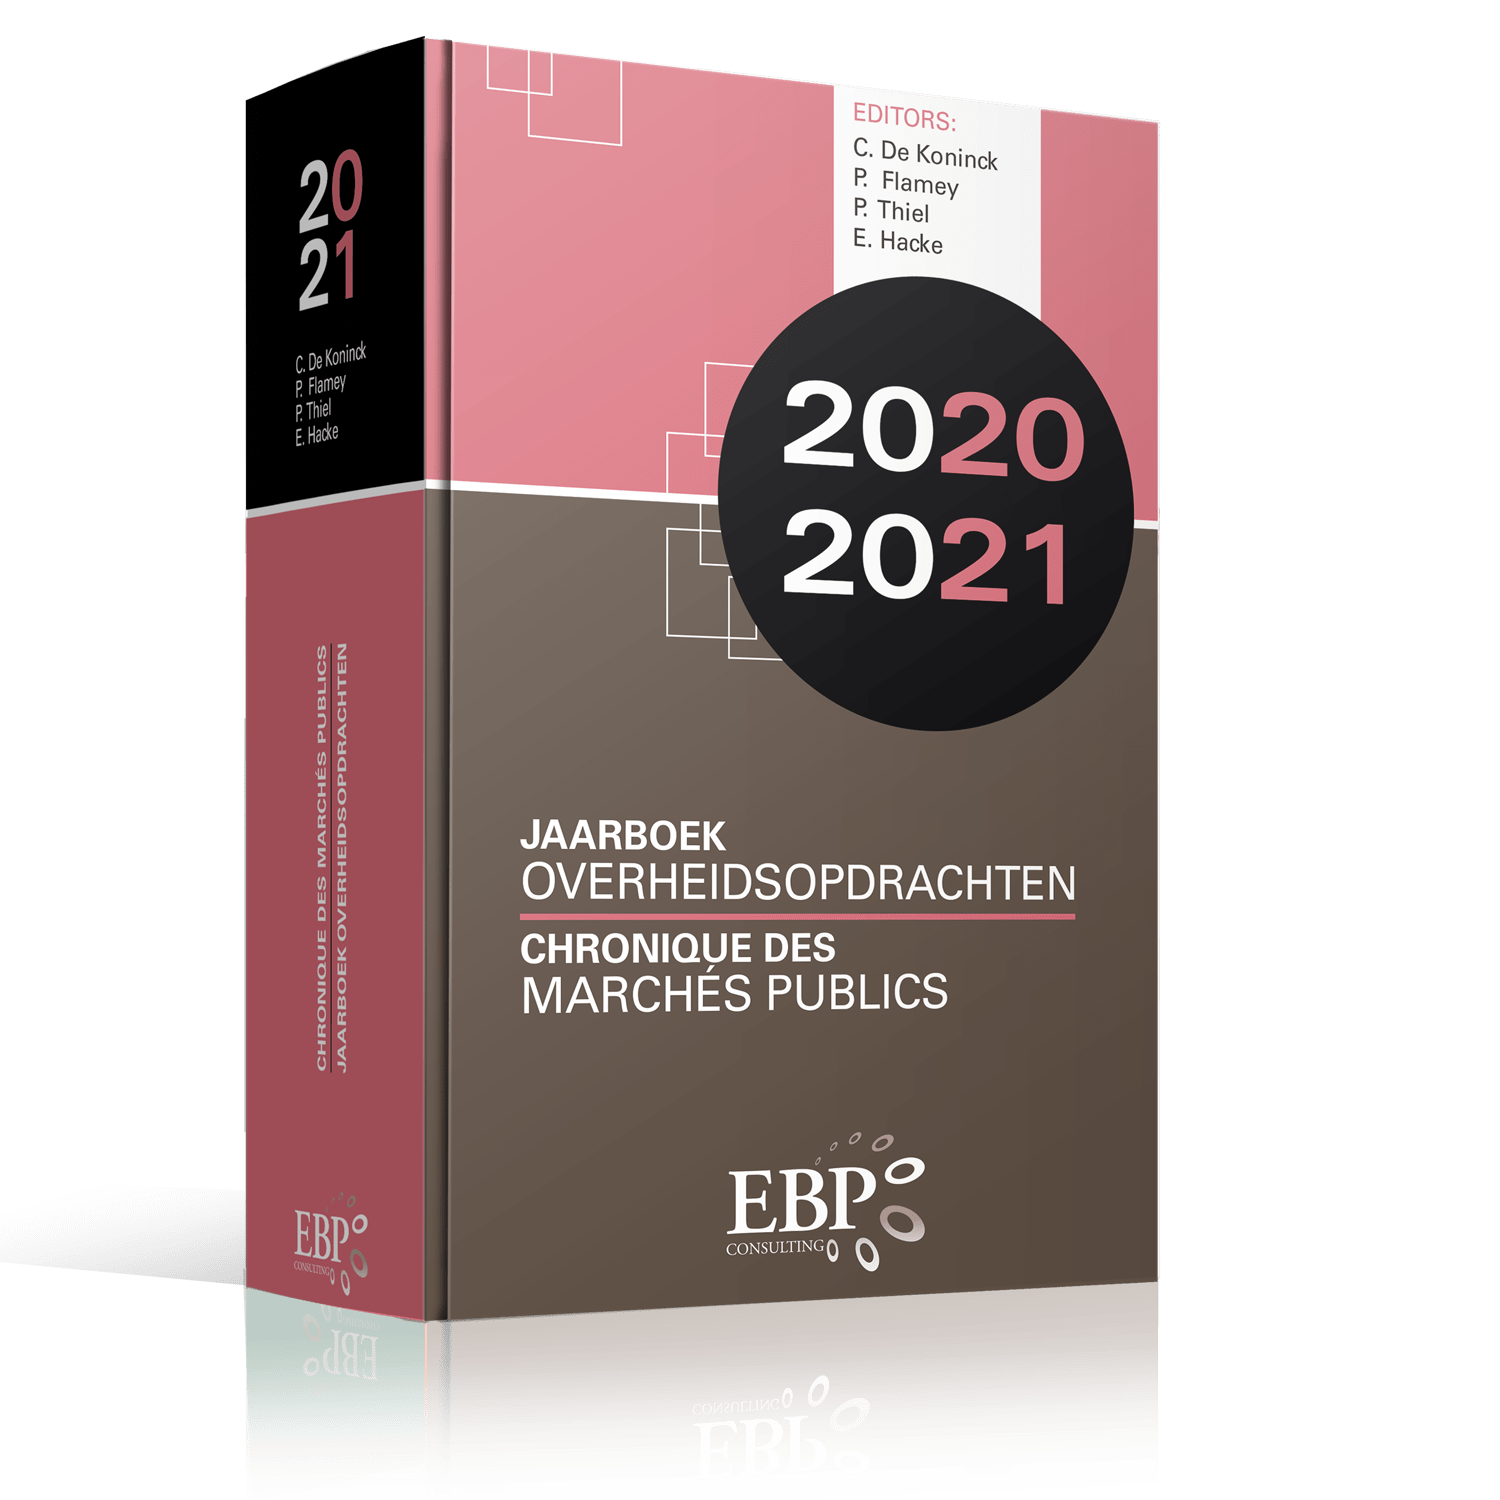 Jaarboek-mockup2020-2021